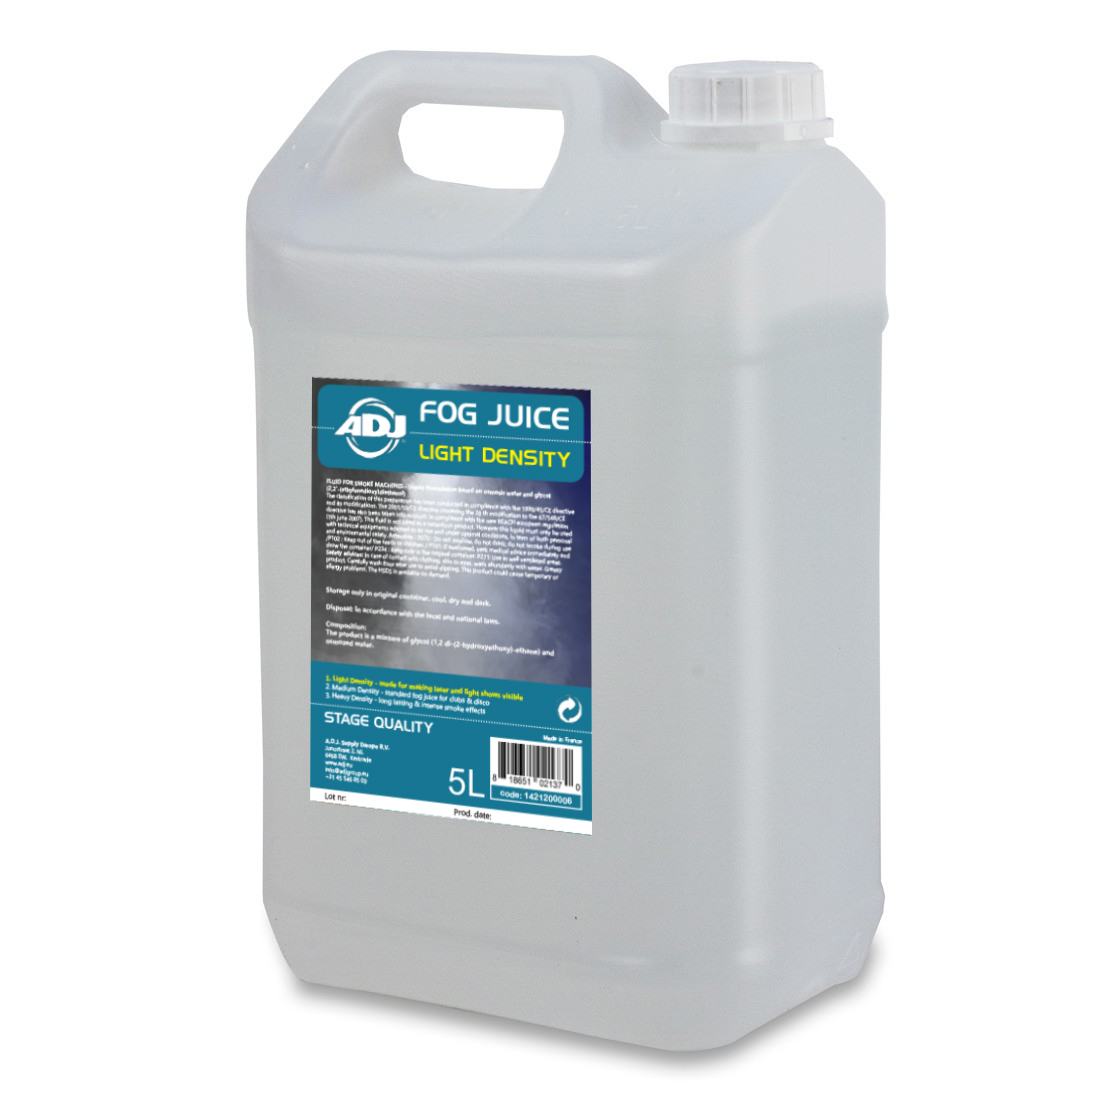 ADJ Fog juice 1 light -5 Liter Glycol als Träger